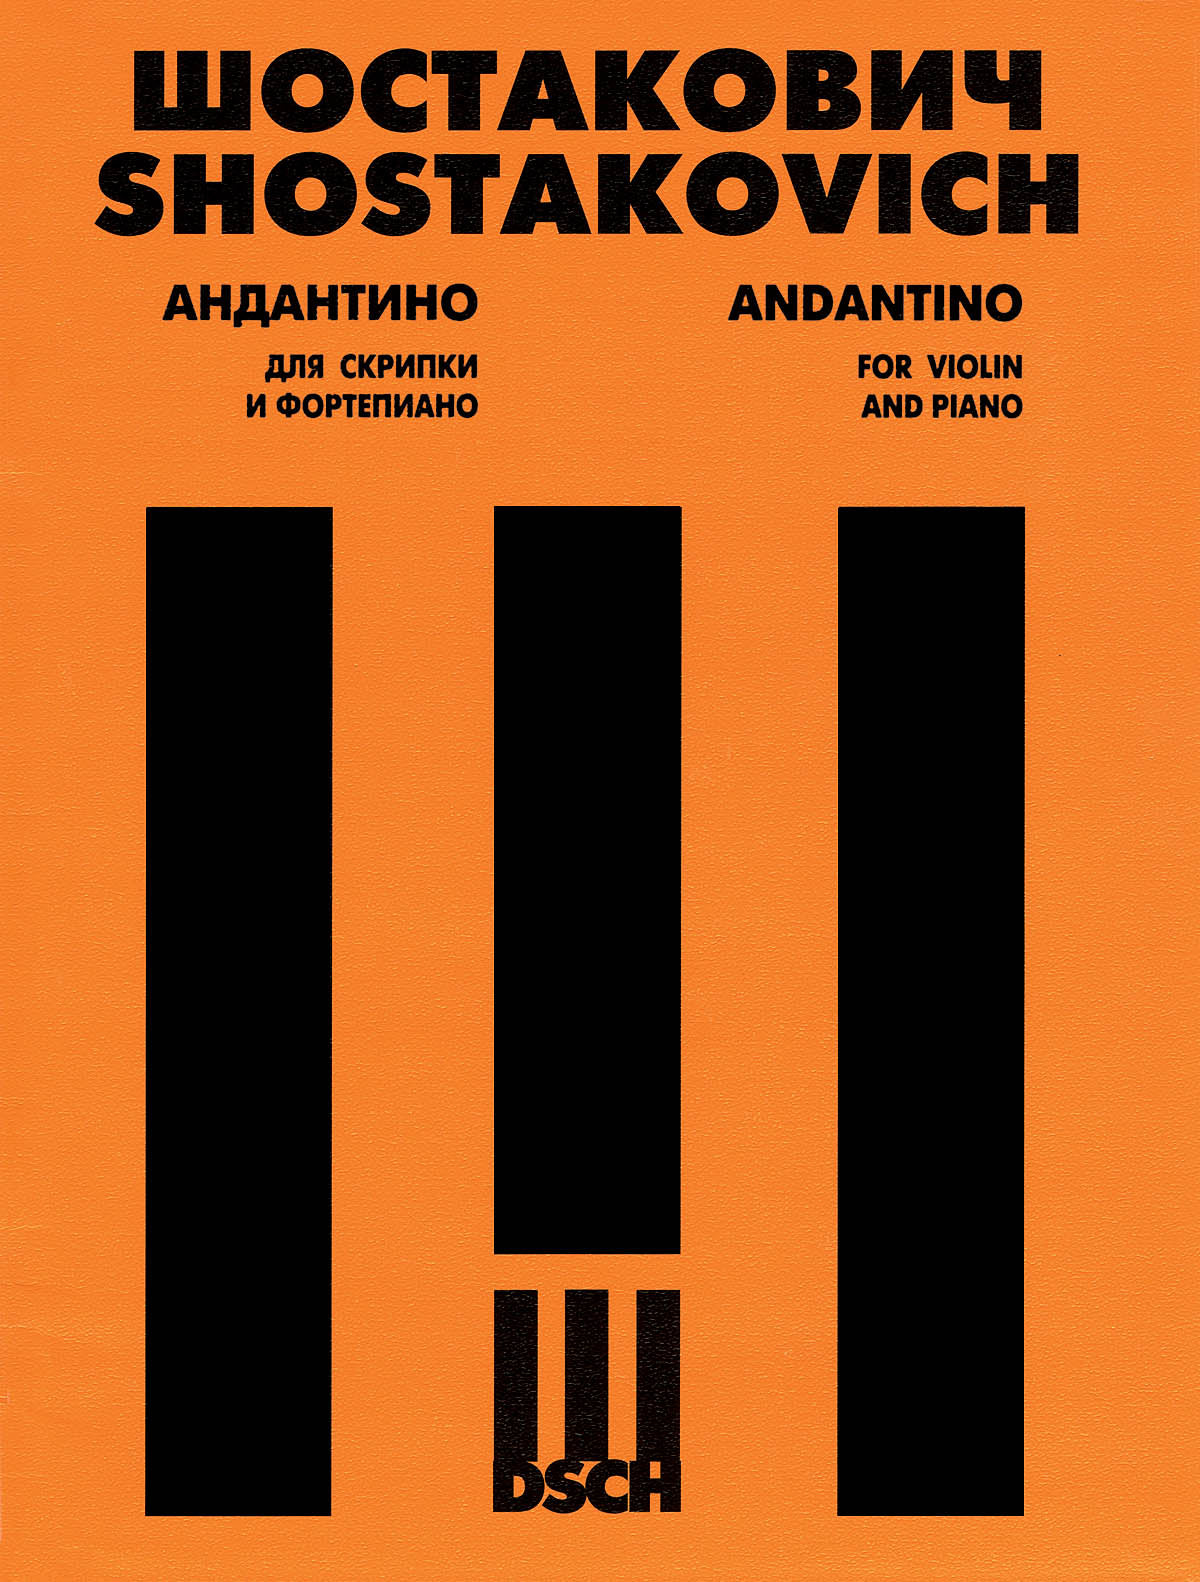 Shostakovich: Andantino from String Quartet No. 4, Op. 83 (arr. for violin)